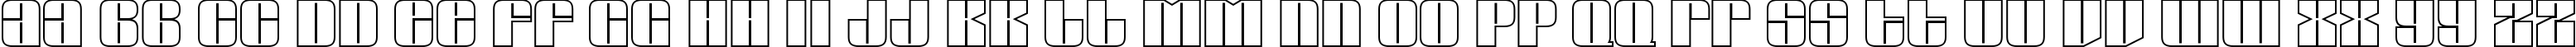 Пример написания английского алфавита шрифтом a_GlobusOtl